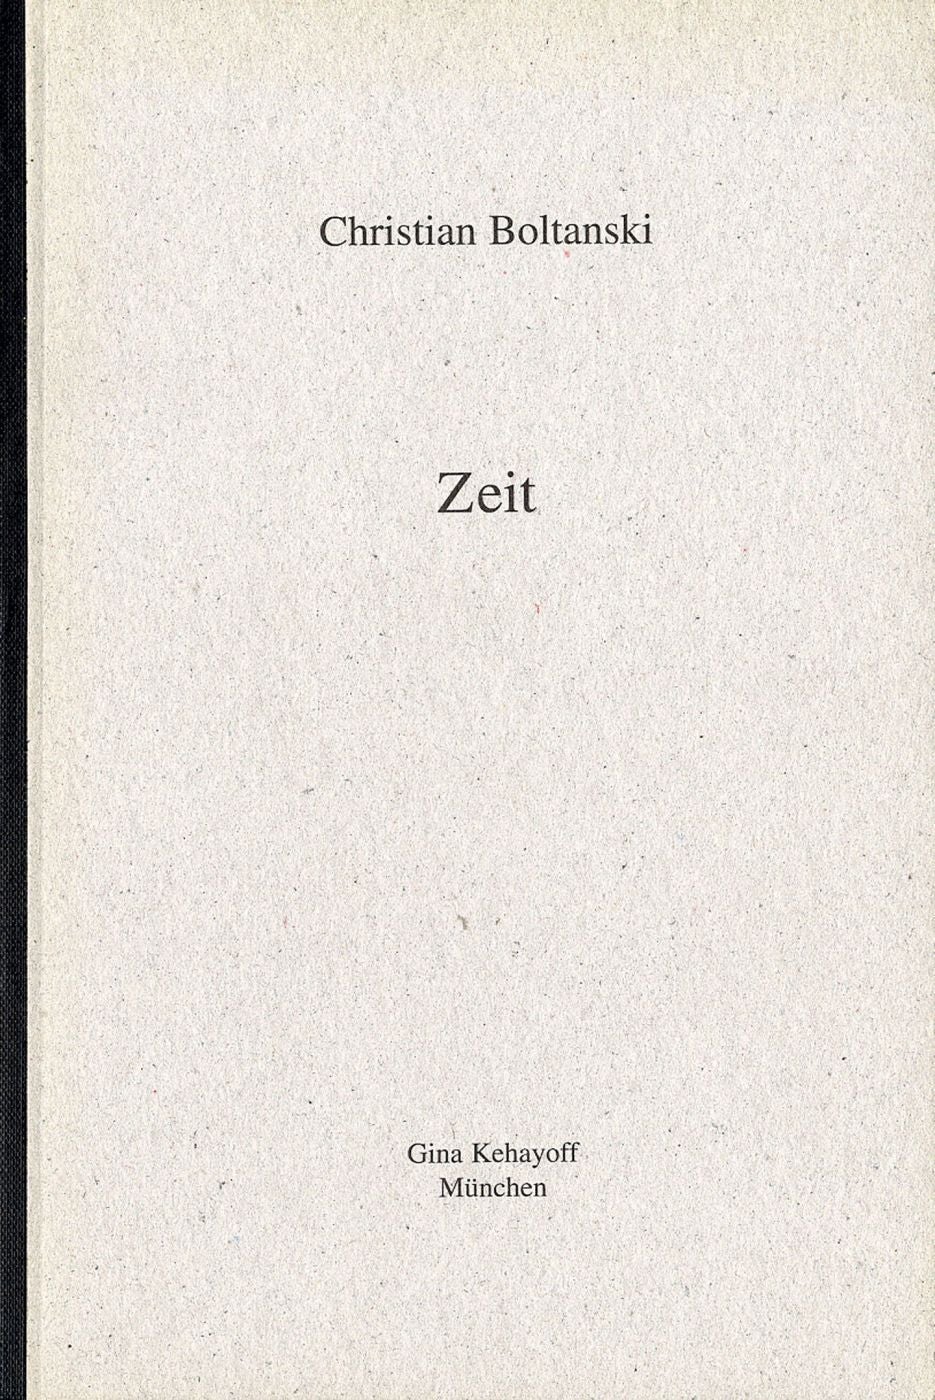 Christian Boltanski: Zeit (Time)